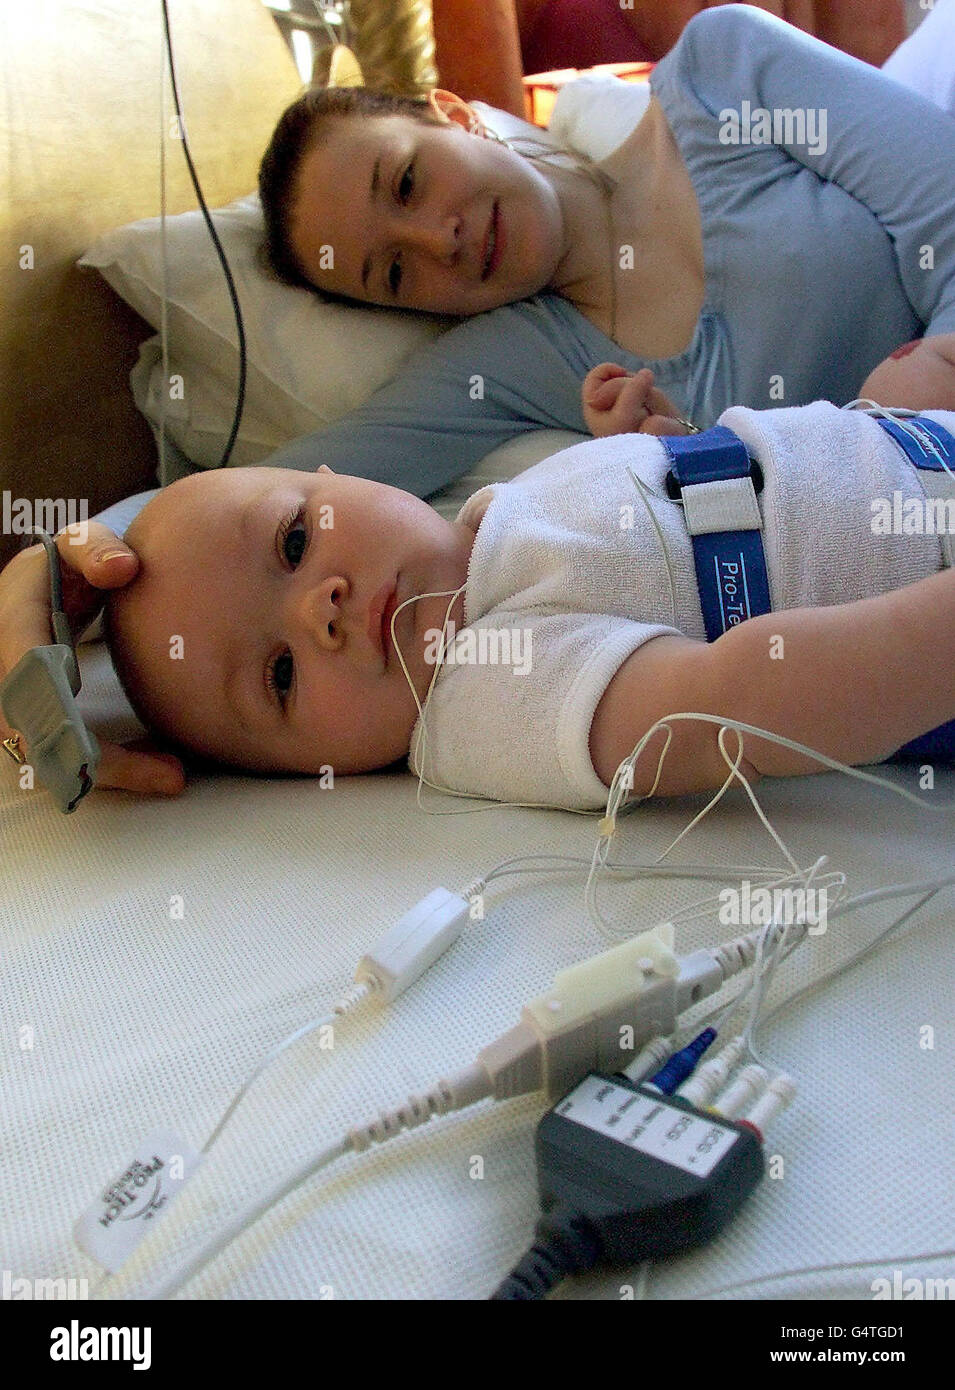 Eleanor Robertson, de 20 años, con su hijo Lewis de 19 meses, en el laboratorio de sueño de la Universidad de Durham, que estudia los patrones de sueño de las madres y los bebés cuando comparten la cama, lo que los investigadores esperan que ayude a combatir el Síndrome de muerte súbita del lactante (SIDS). Foto de stock